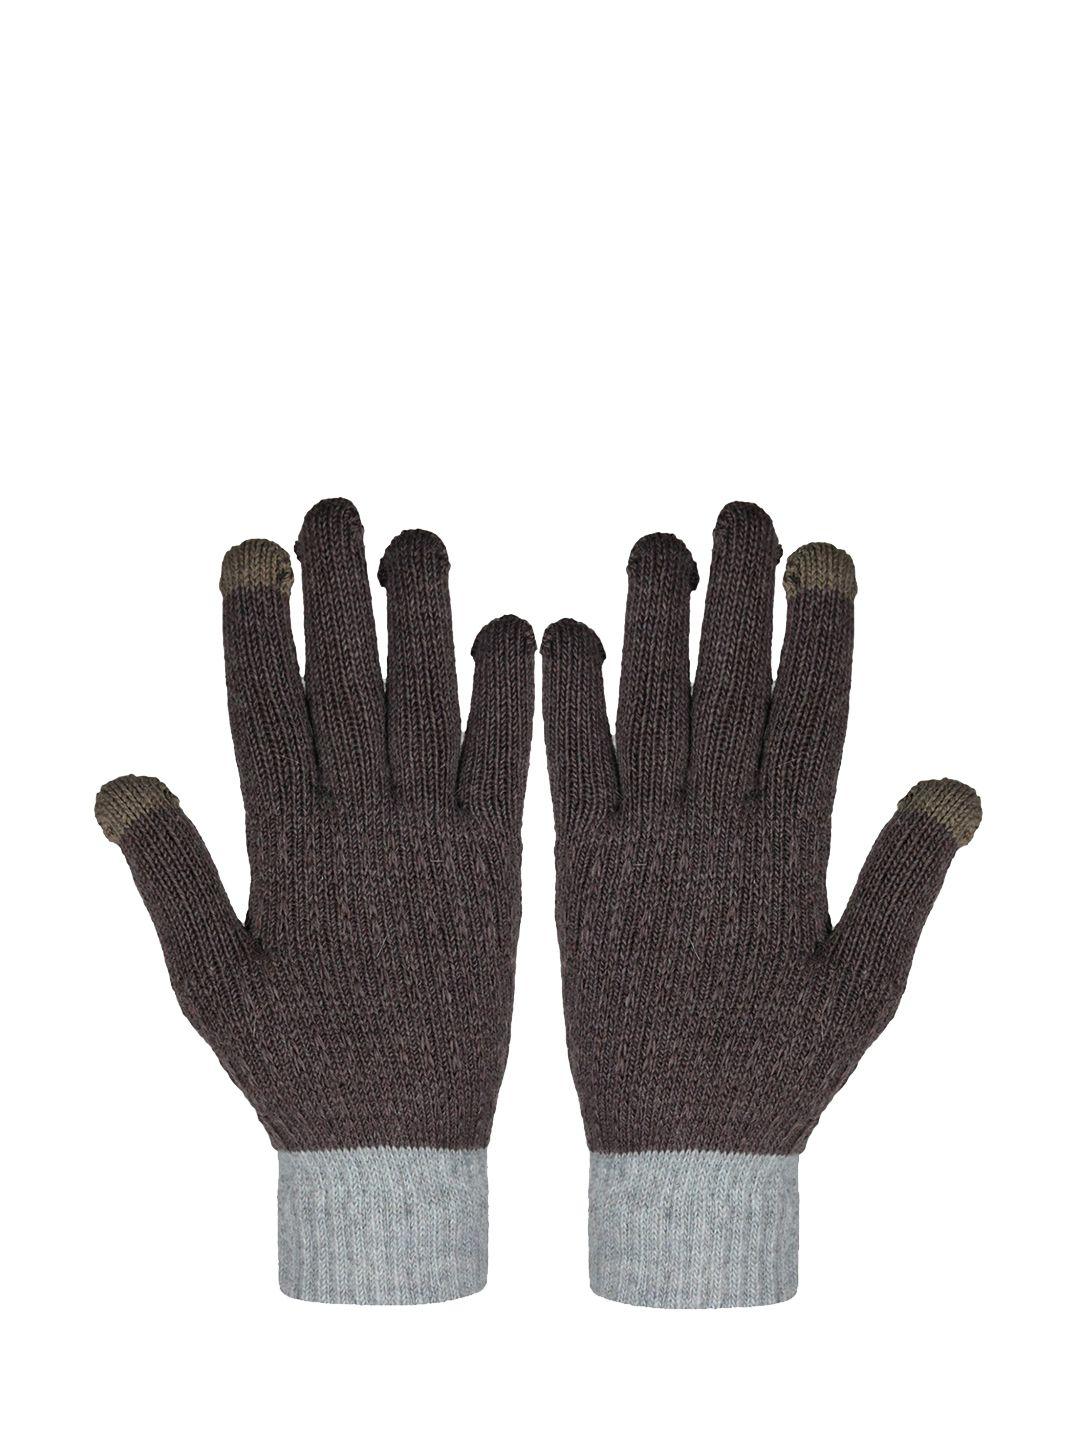 baesd women full finger woolen winter gloves